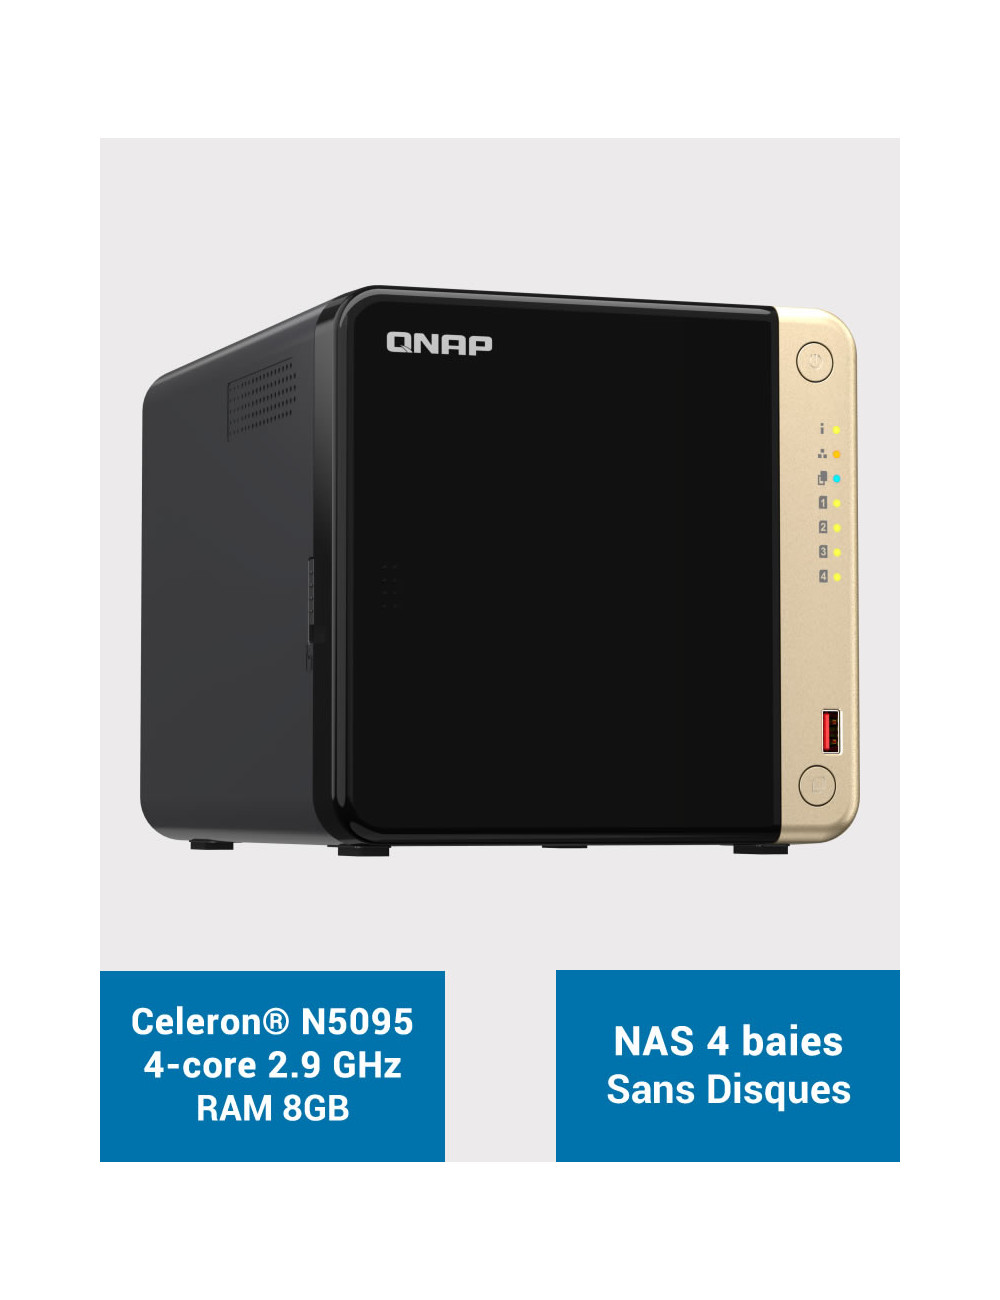 QNAP TS-464 8GB Serveur NAS 4 baies (Sans disques)